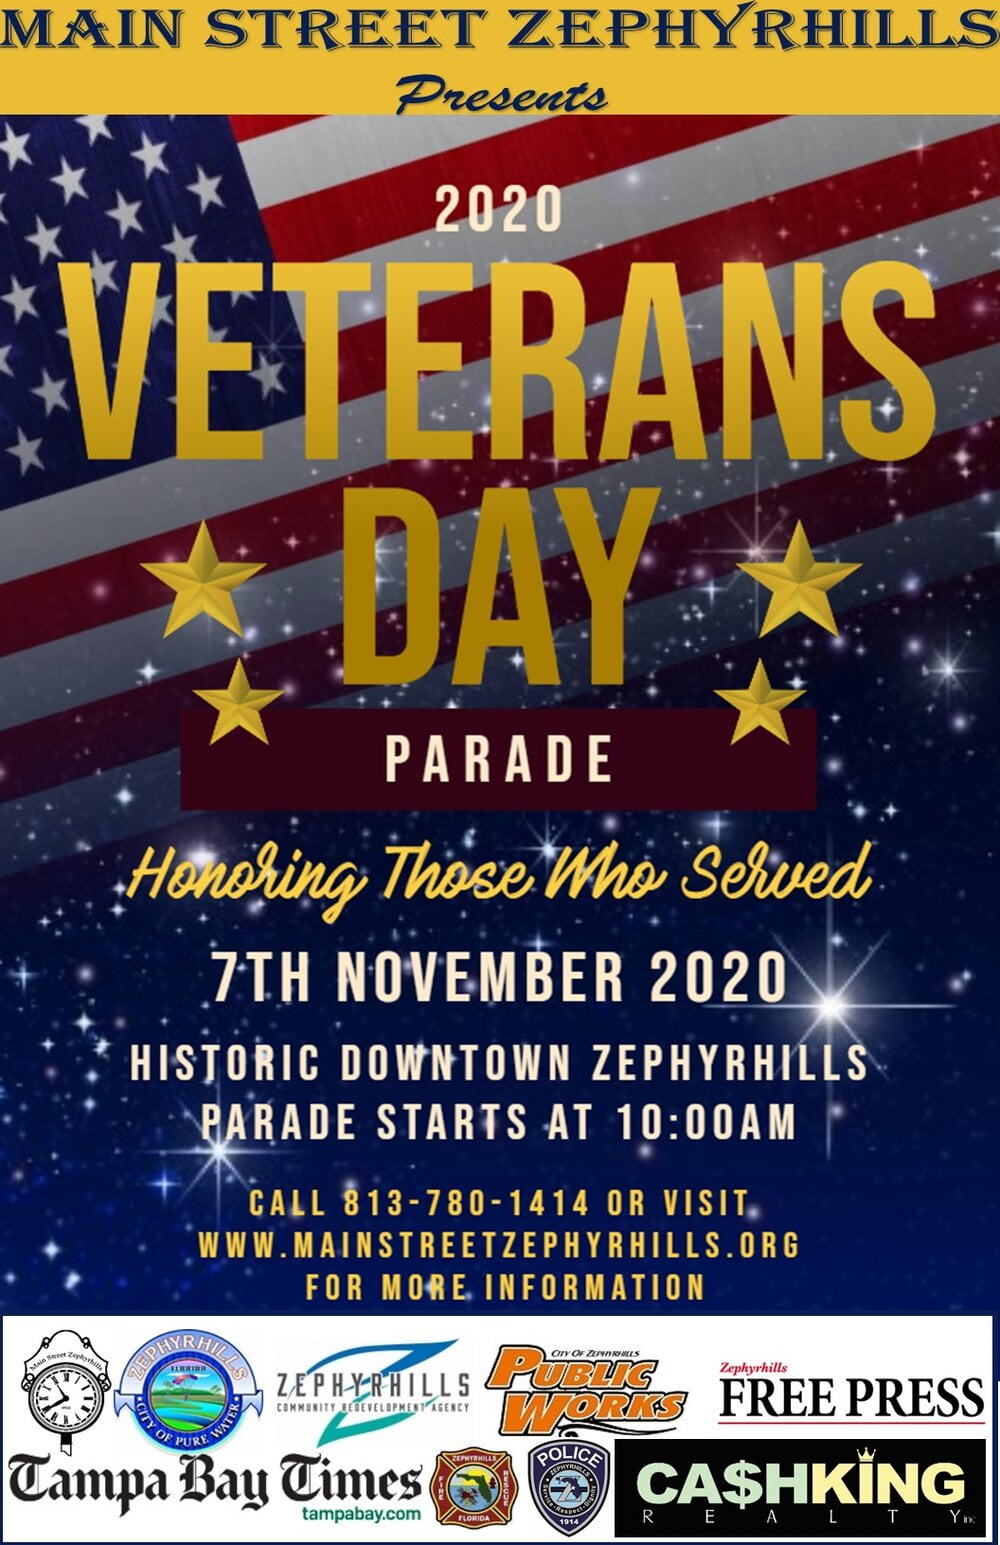 Zephrhills Veterans Day Parade 2020 Information